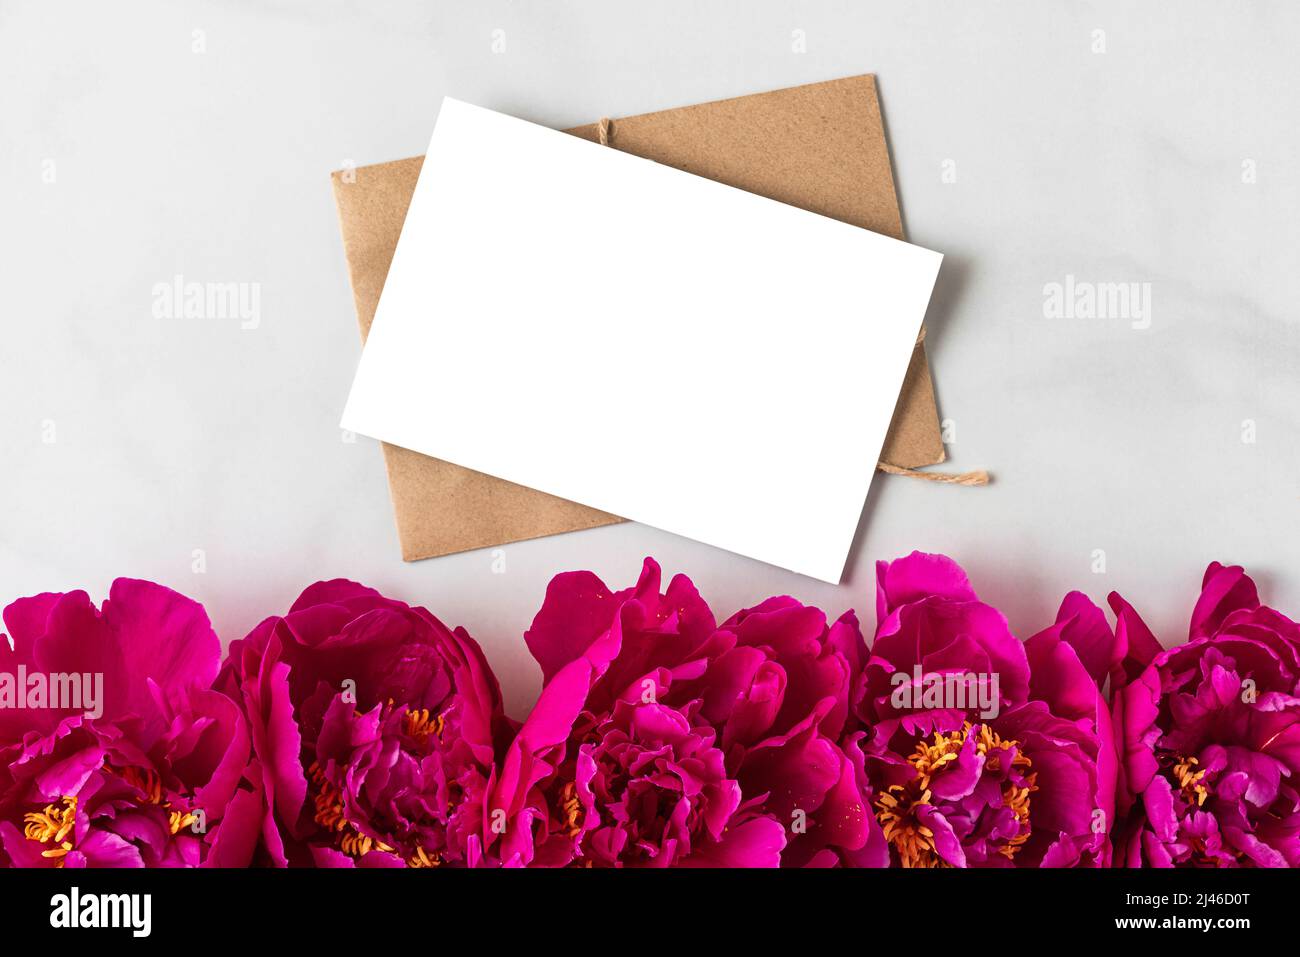 Carte de vœux vierge avec fleurs de pivoine rose sur fond blanc. Invitation de mariage. Maquette. Pose à plat. Fond festif Banque D'Images